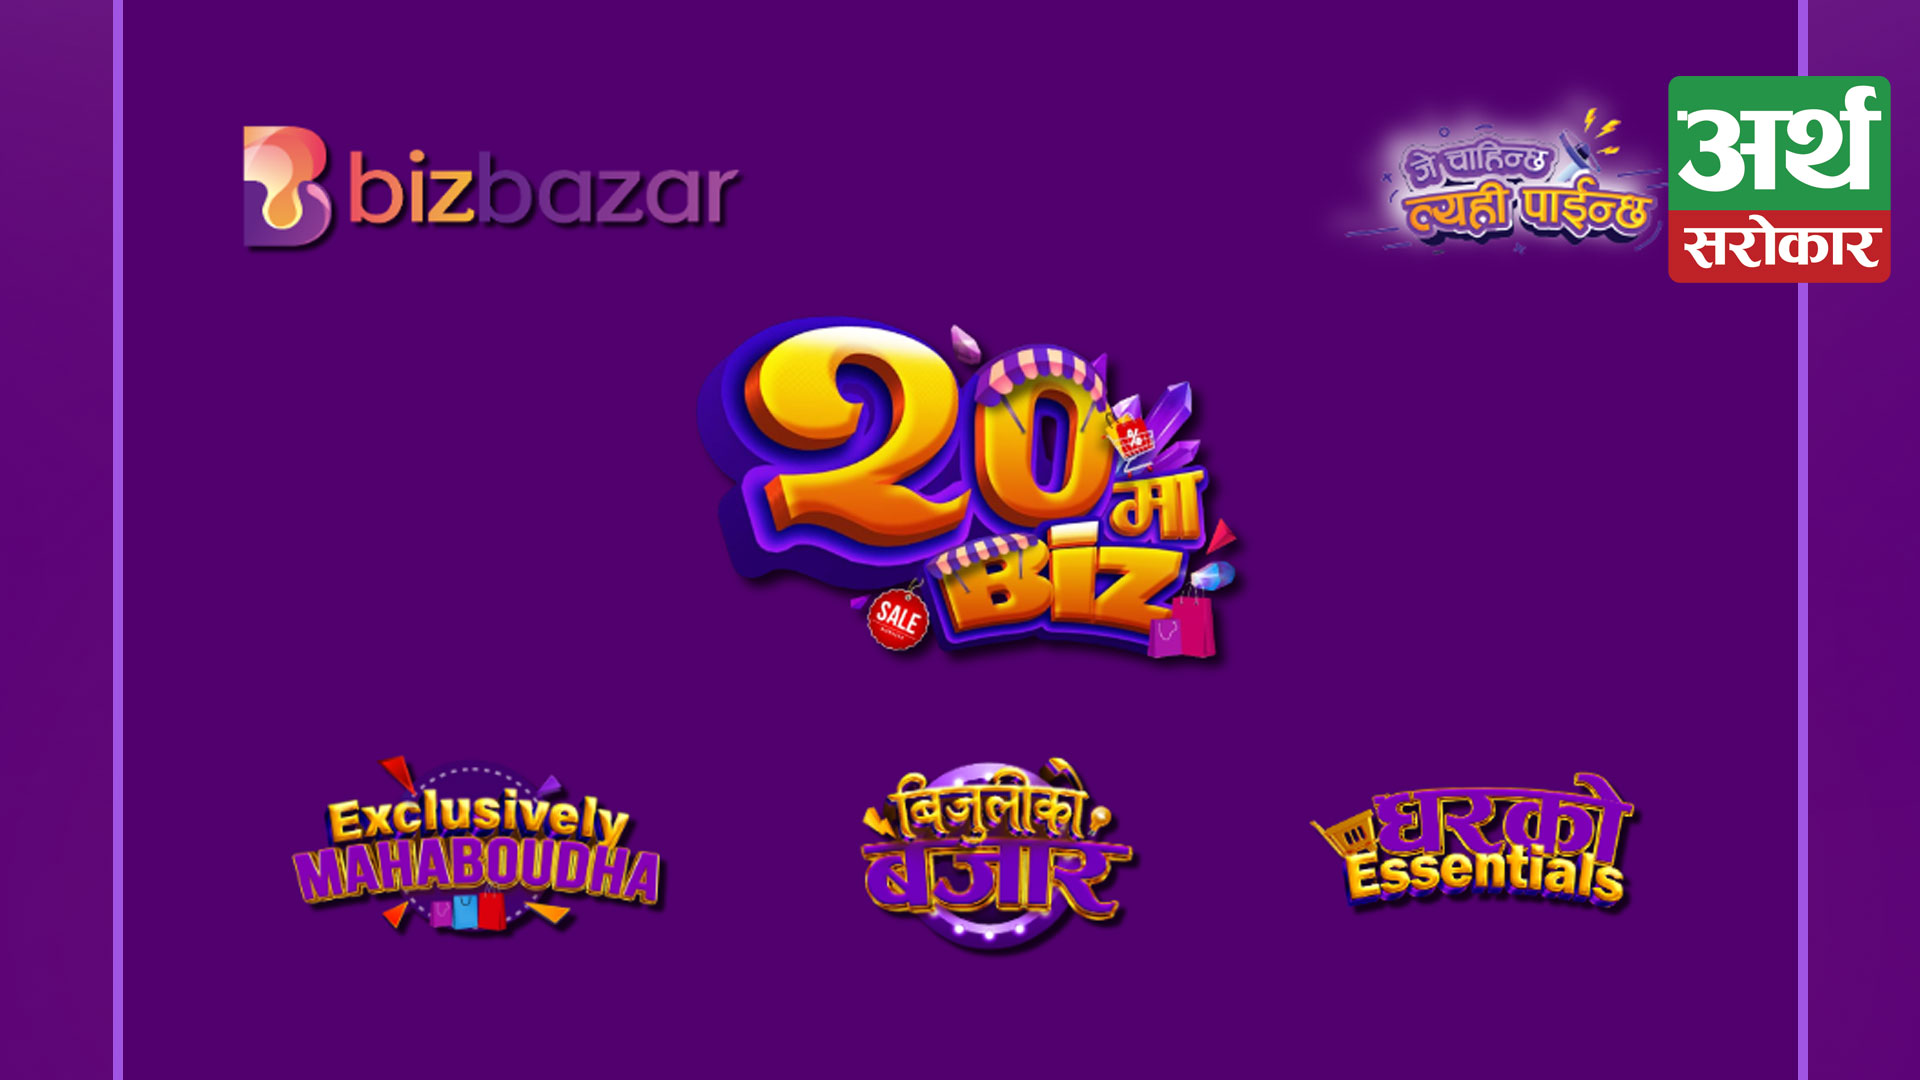 Enjoy various attractive schemes from Bizbazar’s “20 Ma Biz” campaign on Bhadra 20